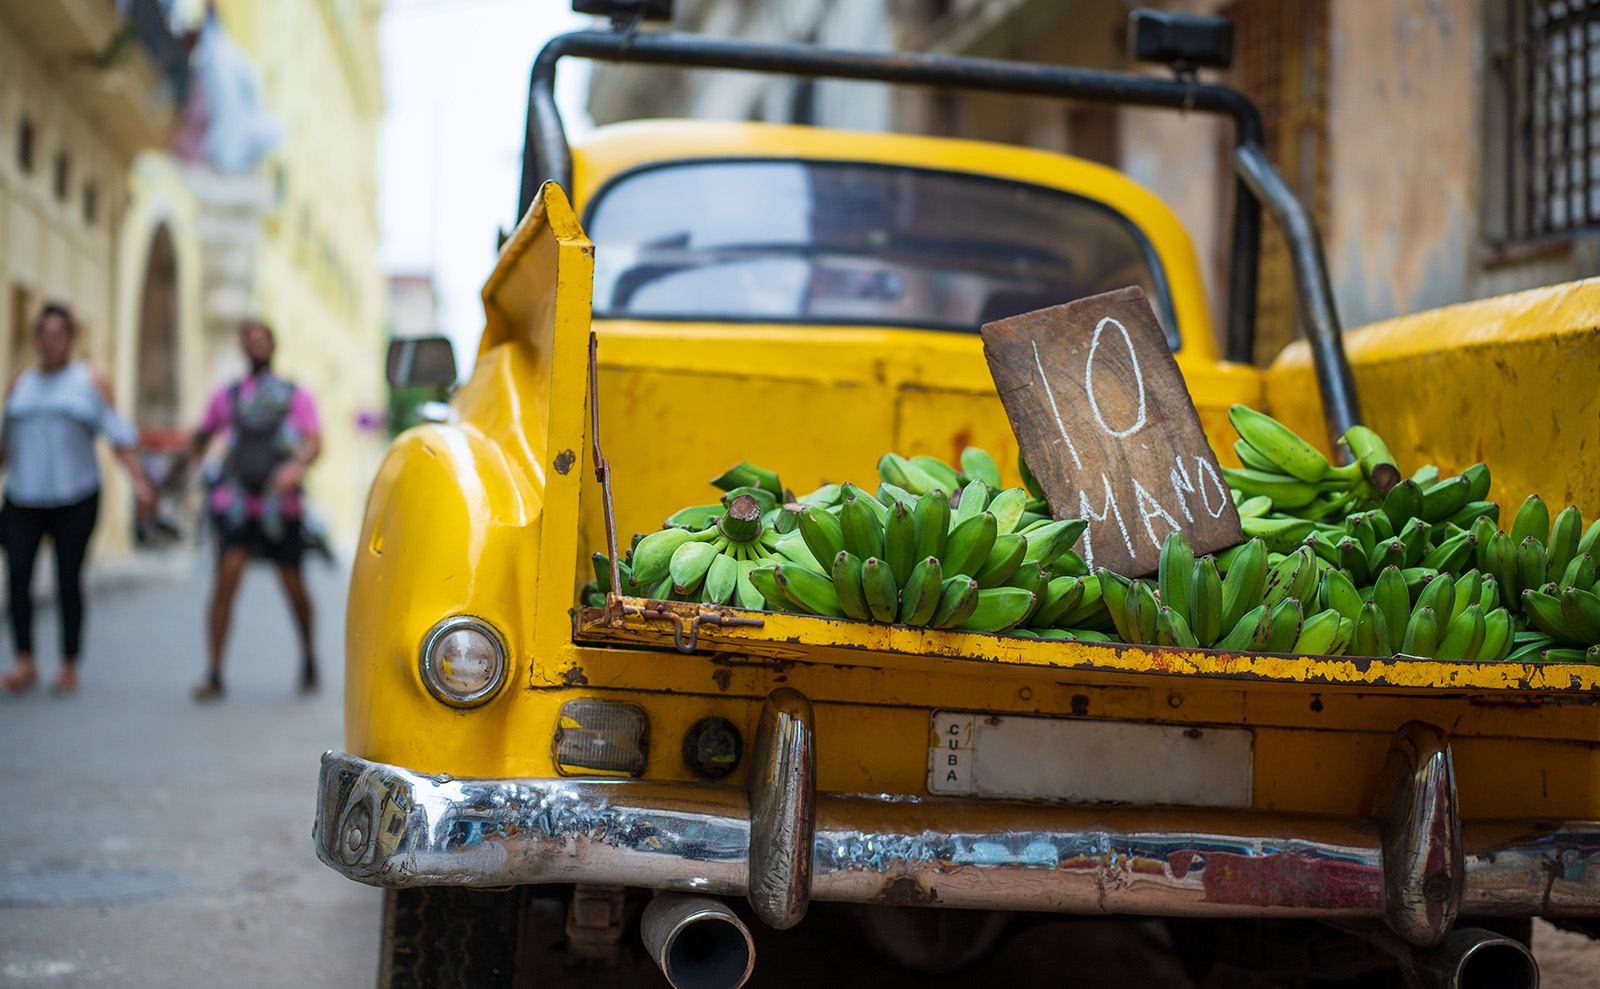 Cuban Picadillo with Plantains Inspired by Leonardo Padura's Novel 'Havana Fever'